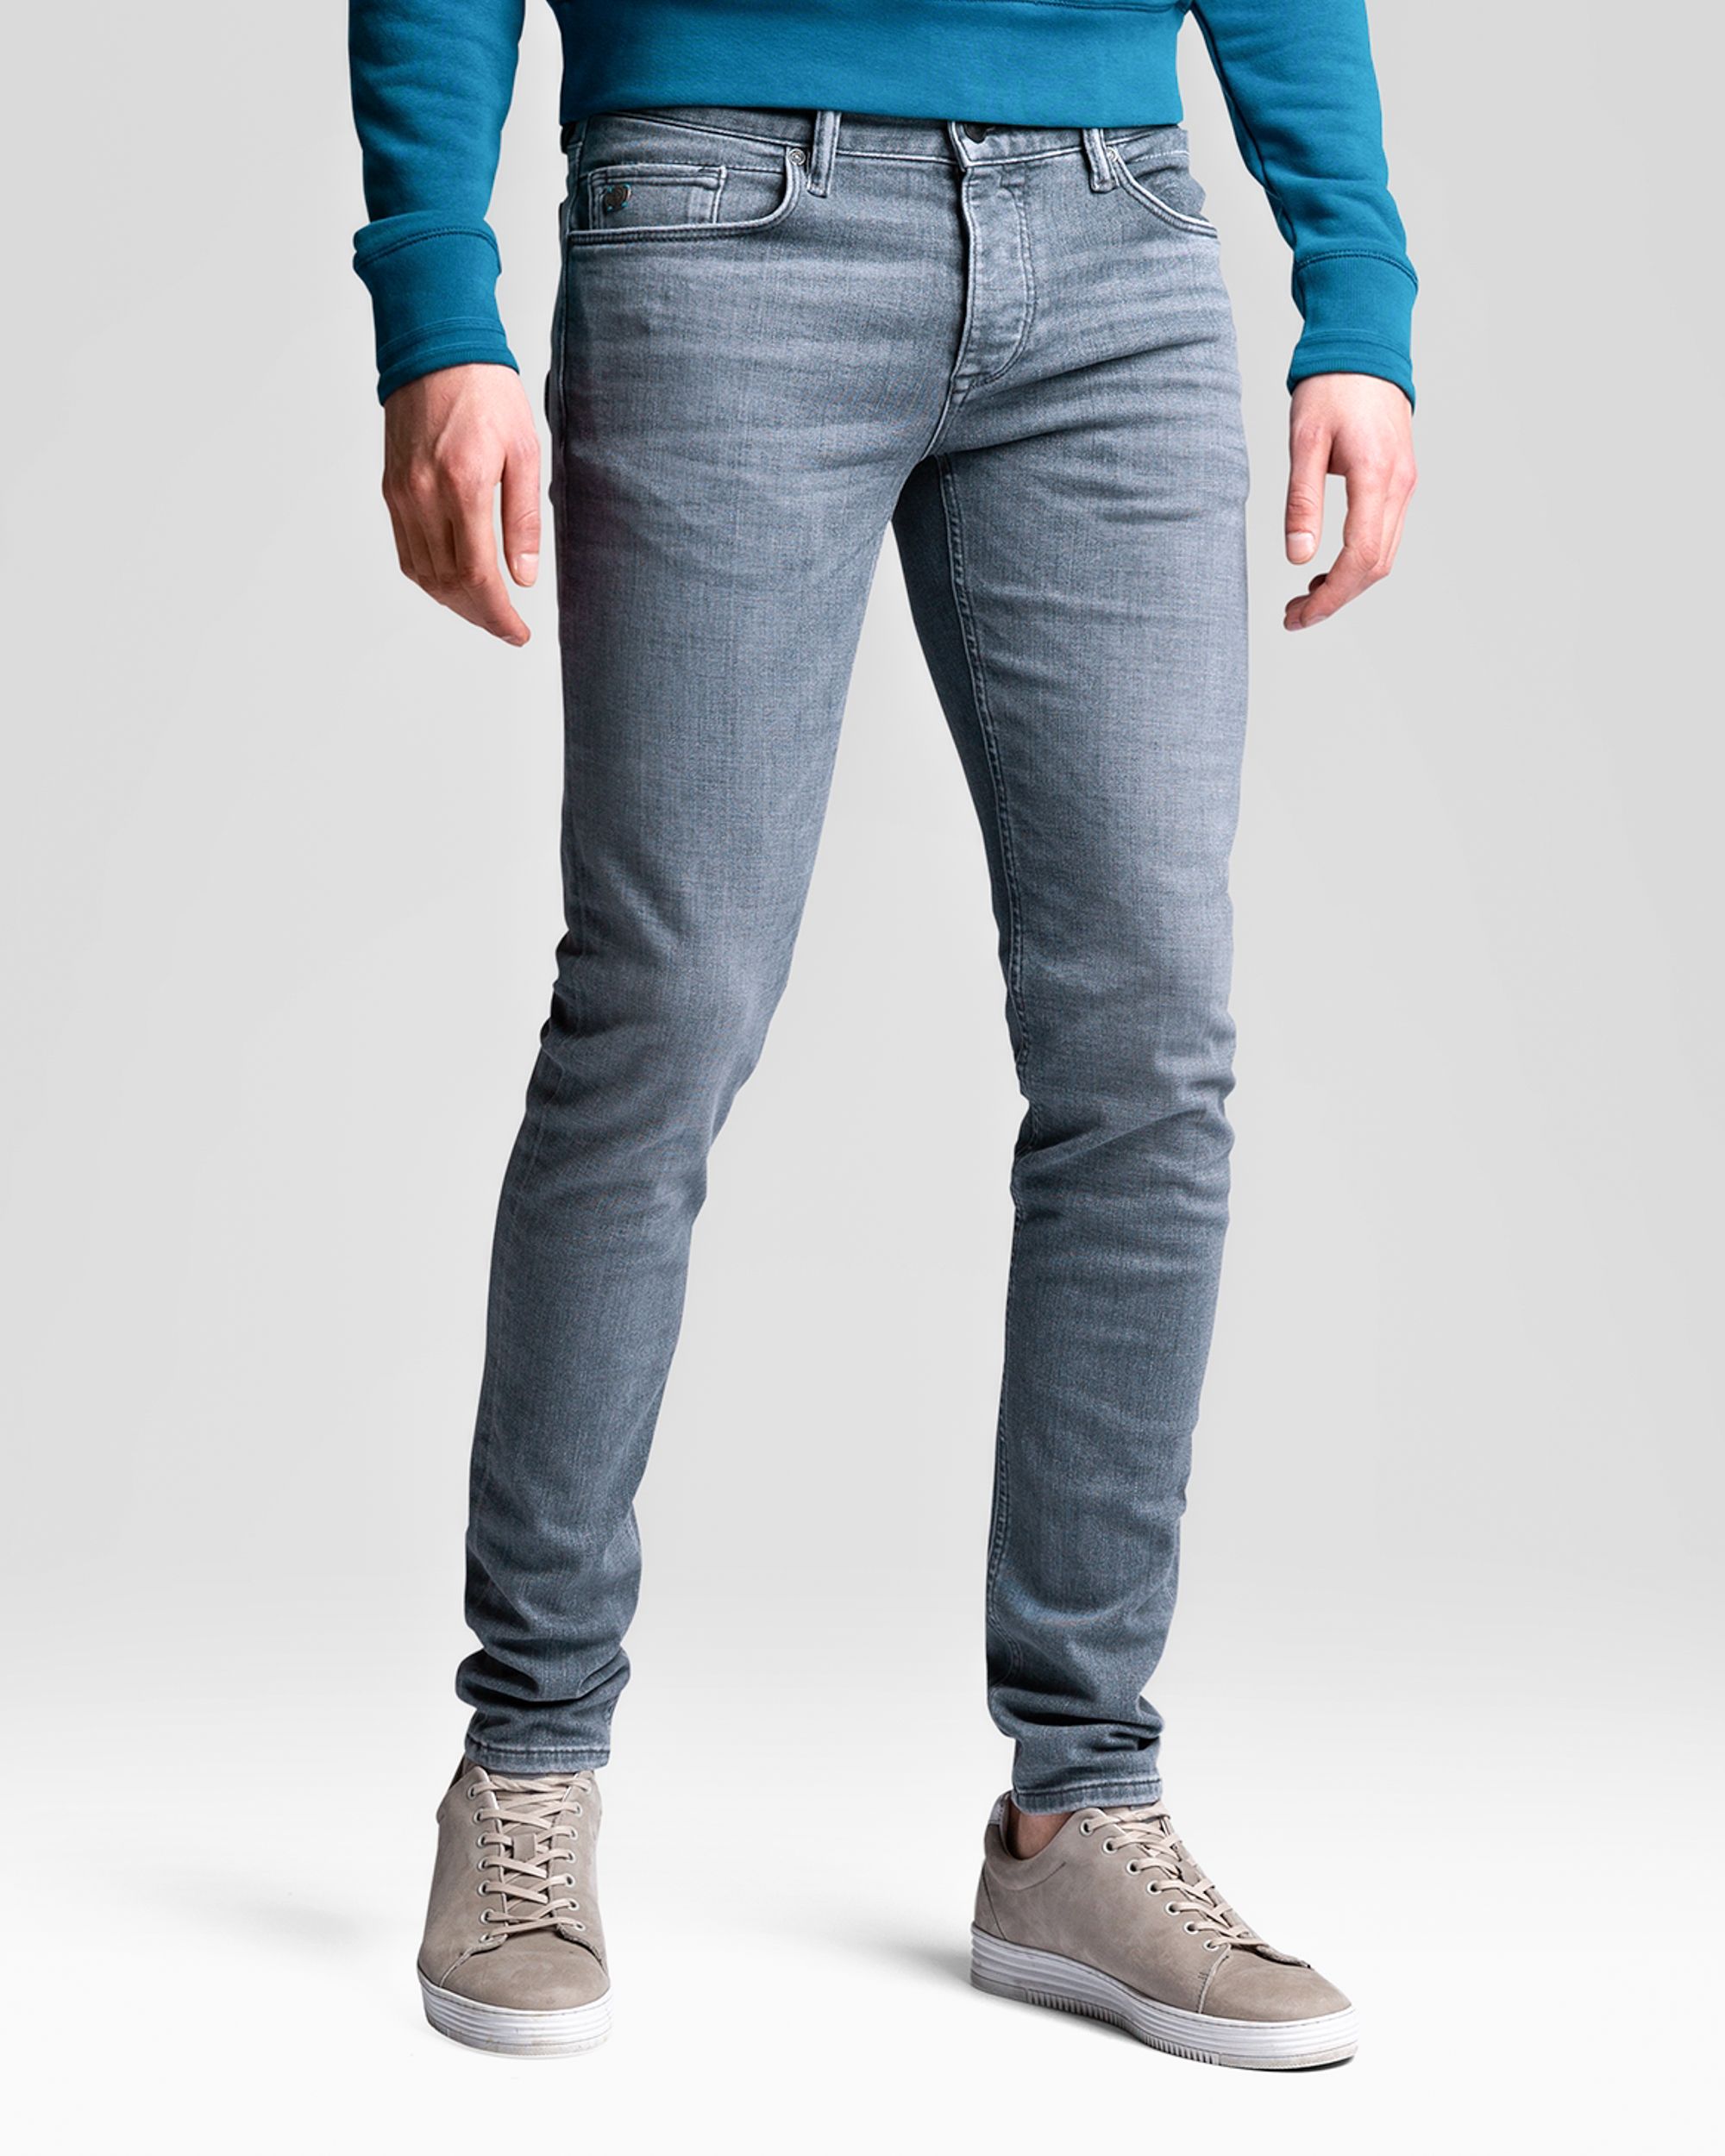 Cast Iron Riser Slim Fit Jeans  Grijs 062049-001-28/32